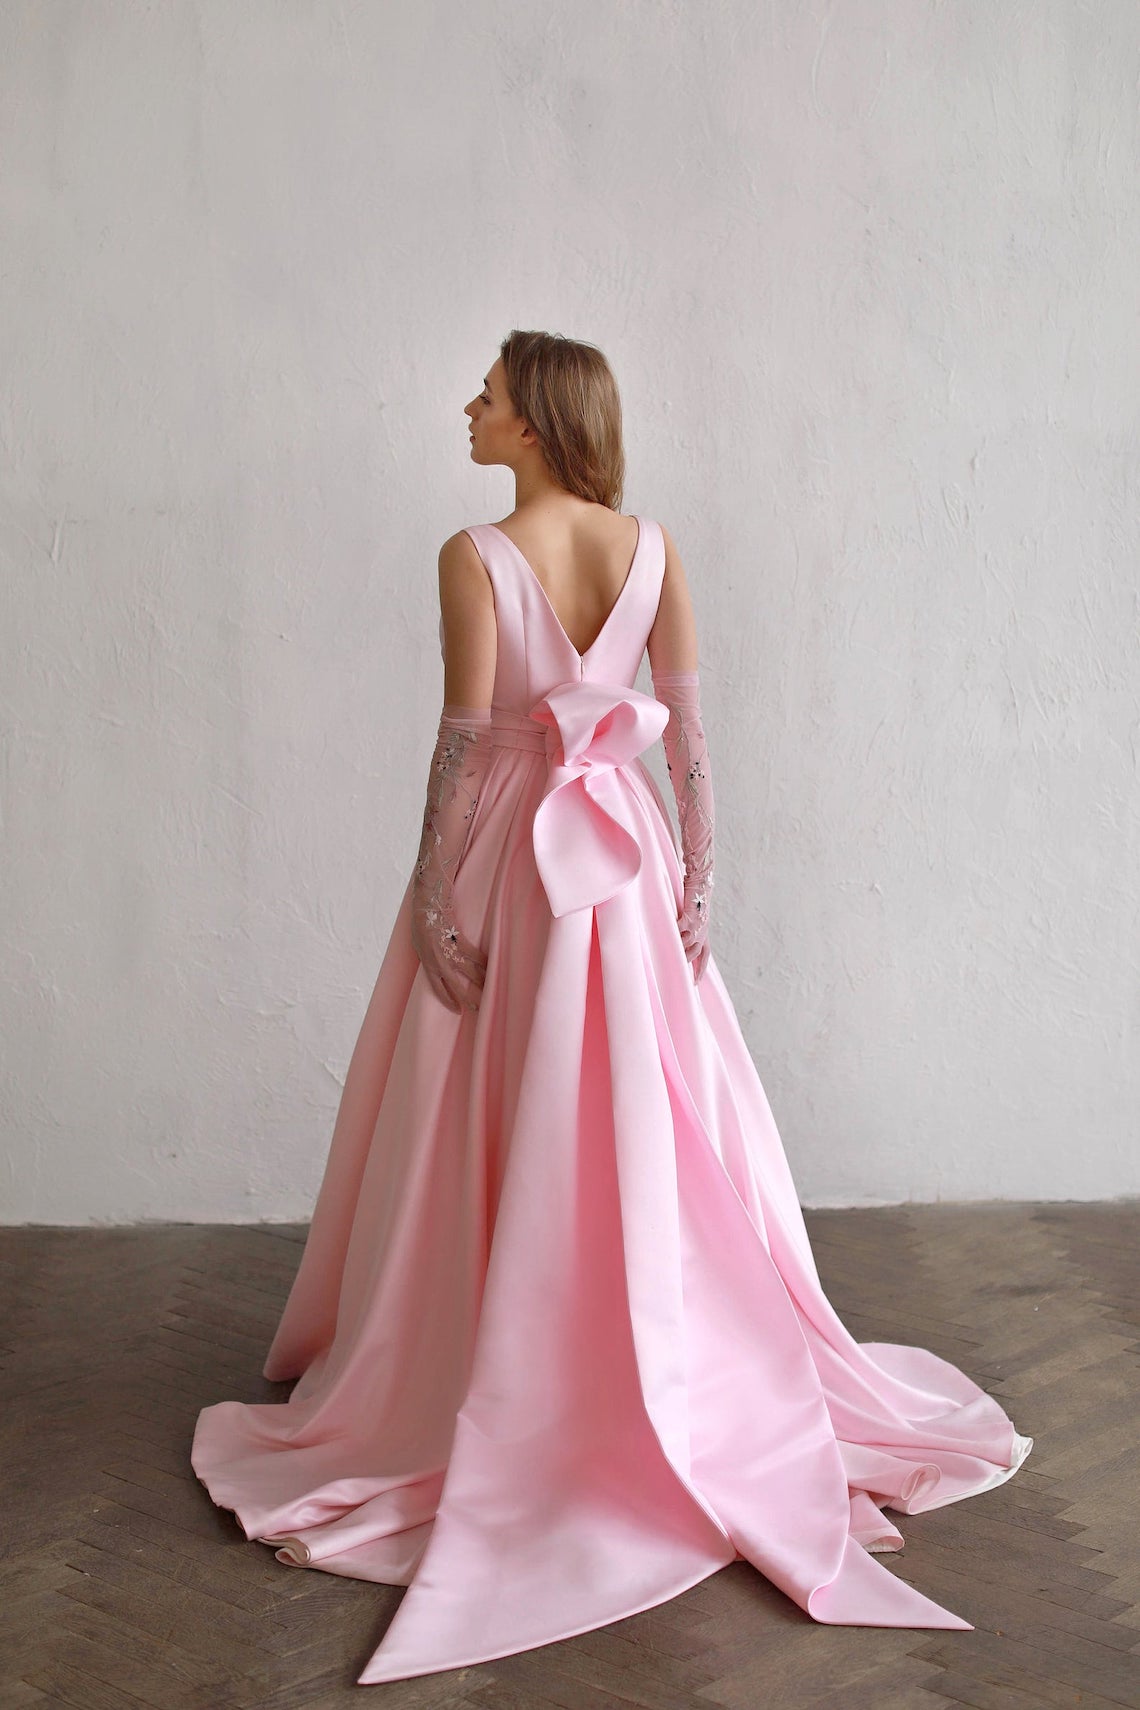 Cathy Telle Pink Back Bow Wedding Dress Best Pink Wedding Dresses for 2021 2022 Brides Bridal Musings 1 - 30 chiếc áo dài cưới màu hồng dành cho cô dâu yêu thích sắc màu